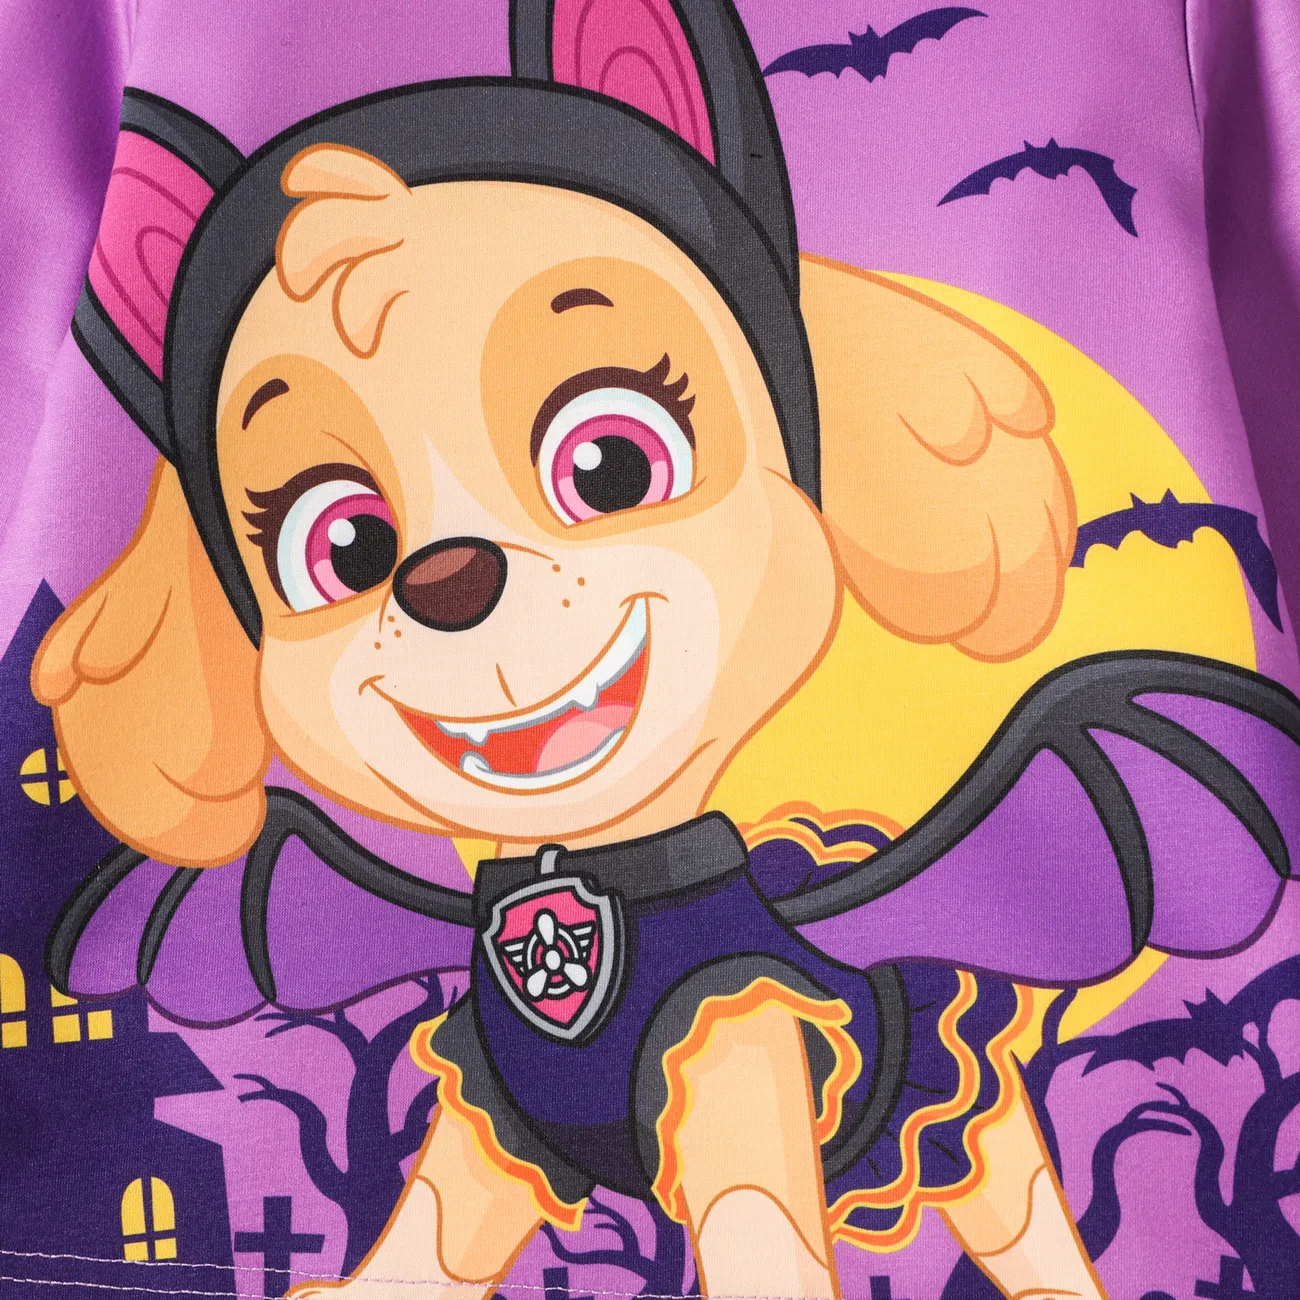 Helfer auf vier Pfoten Halloween Kleinkinder Mädchen Hypertaktil Kindlich Hund Sweatshirts lila big image 1